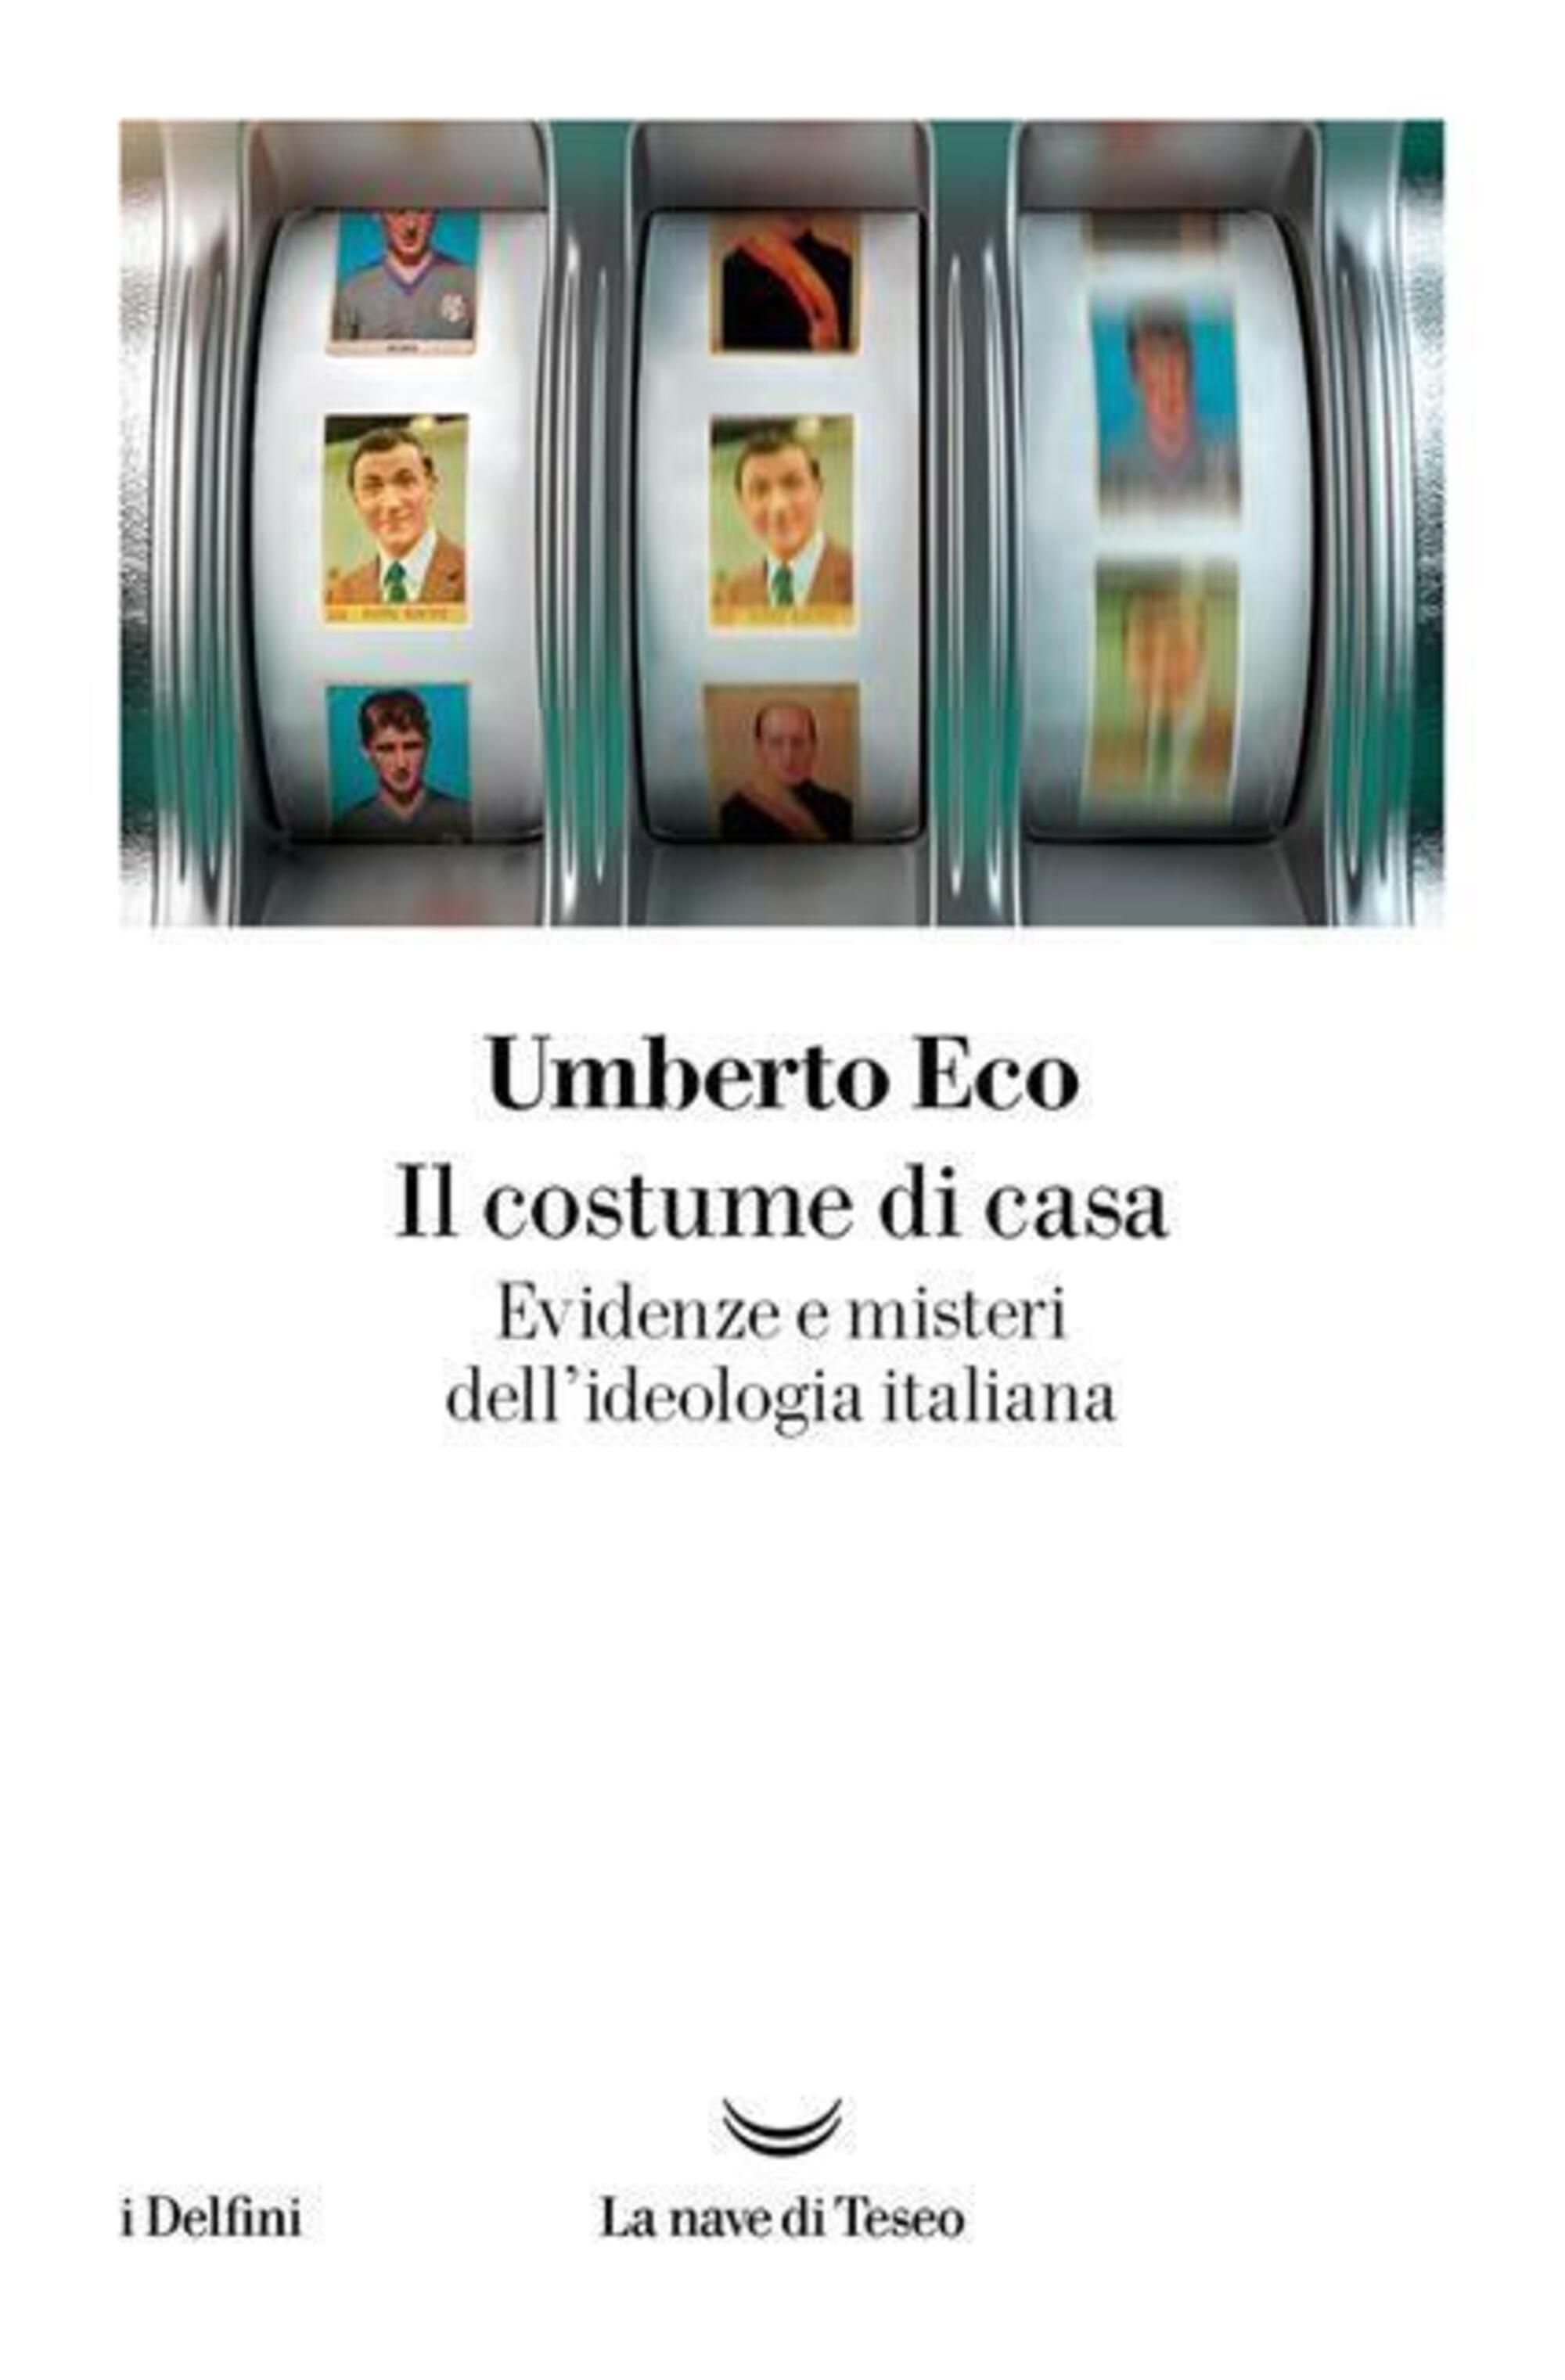 Umberto Eco, Il costume di casa (La nave di Teseo, 2024)